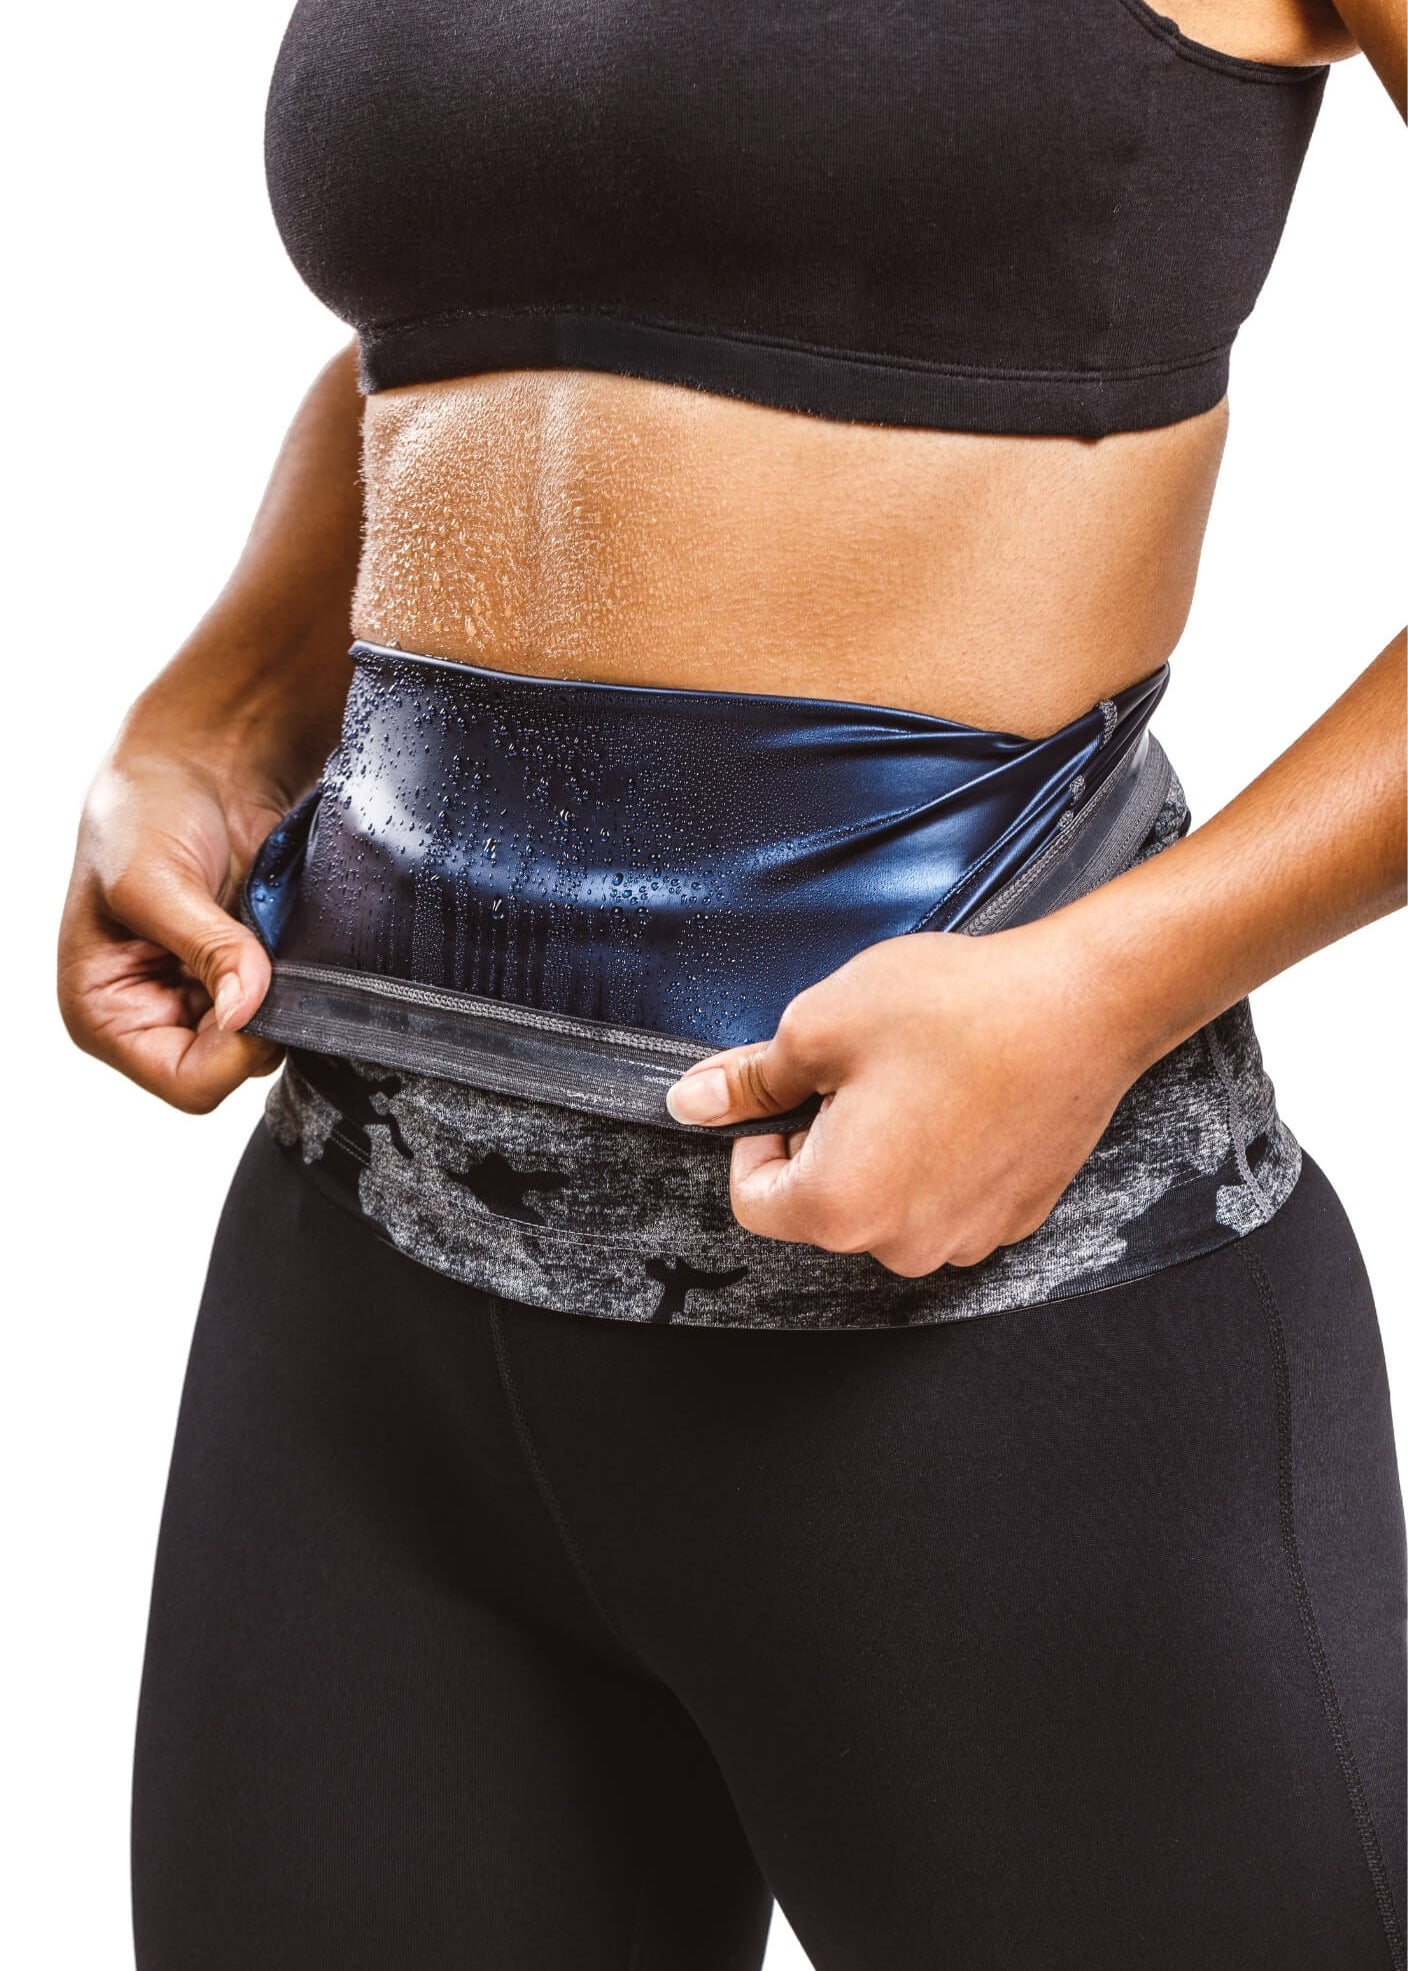 HOPLYNN Sweat Waist Trimmer Belt for Women with 3 Hot Belts, Workout Sweat  Band Waist Trainer Shaper for Women Zipper Black Small, Waist Trimmers -   Canada